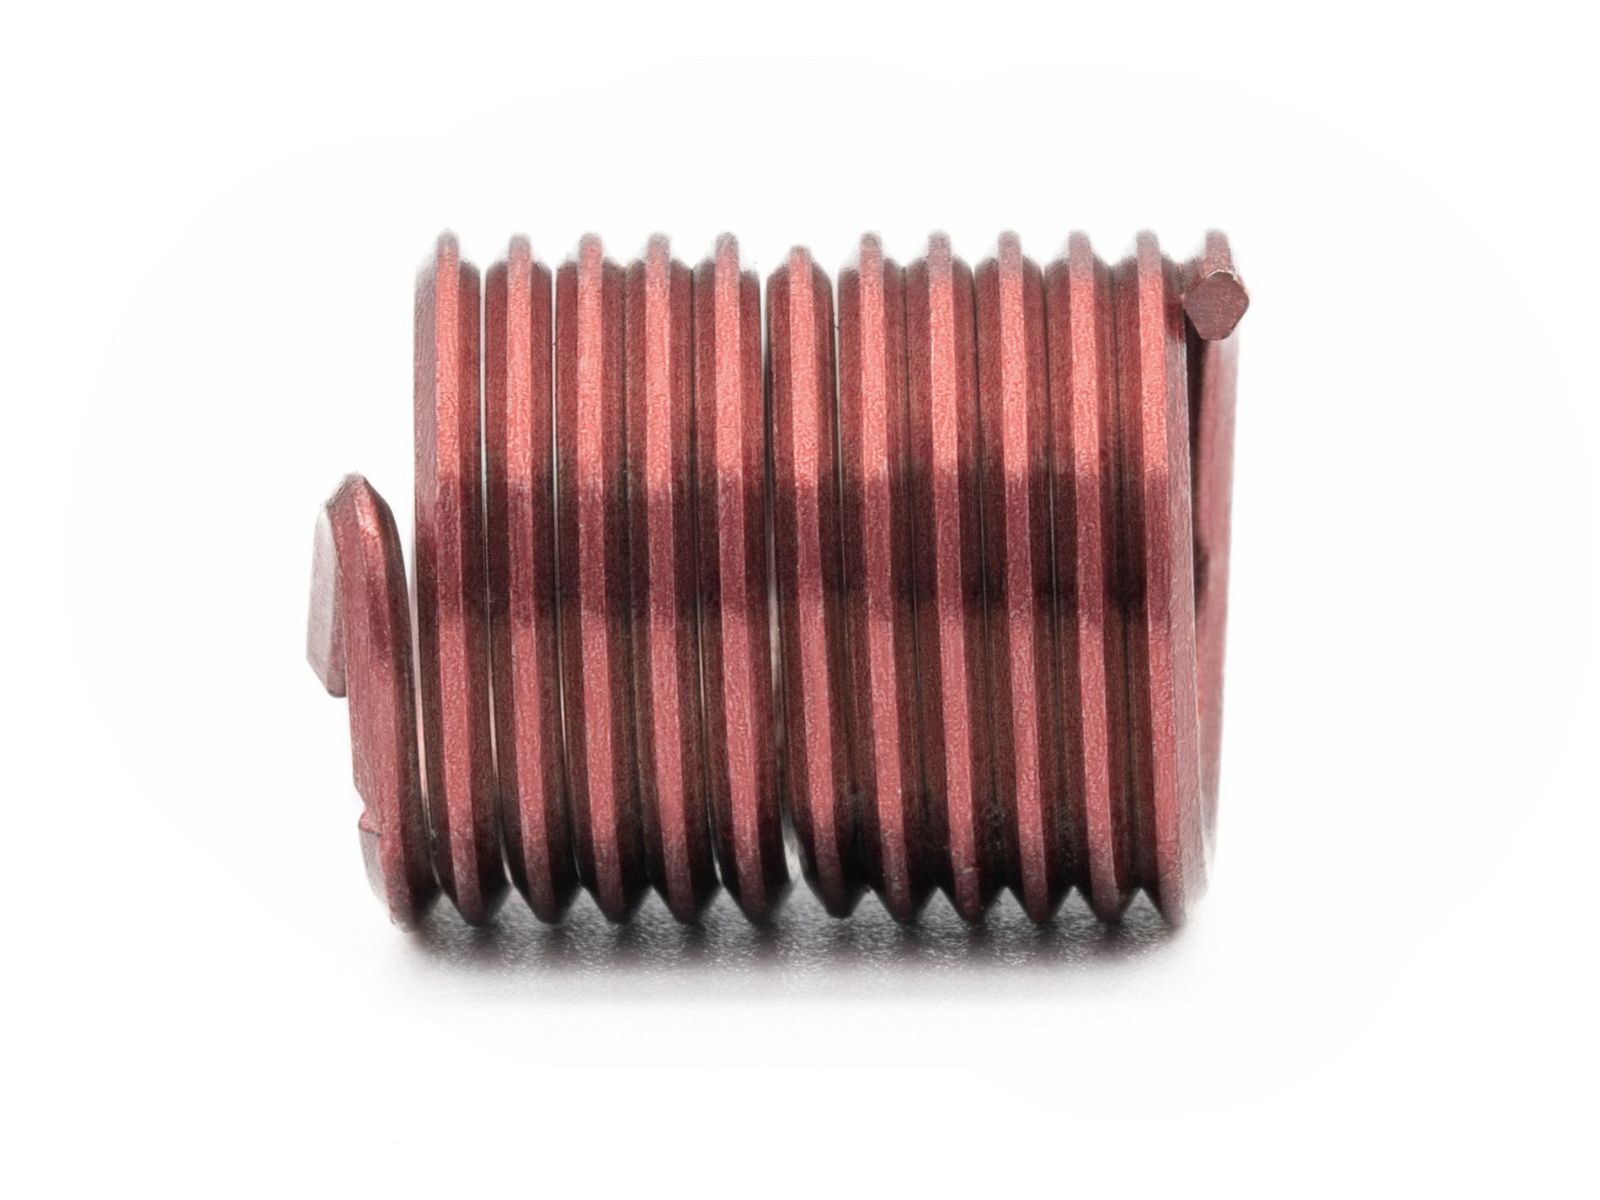 BaerCoil Wire Thread Inserts UNF 5/8 x 18 - 2.0 D (31.75 mm) - screw grip (screw locking) - 50 pcs.